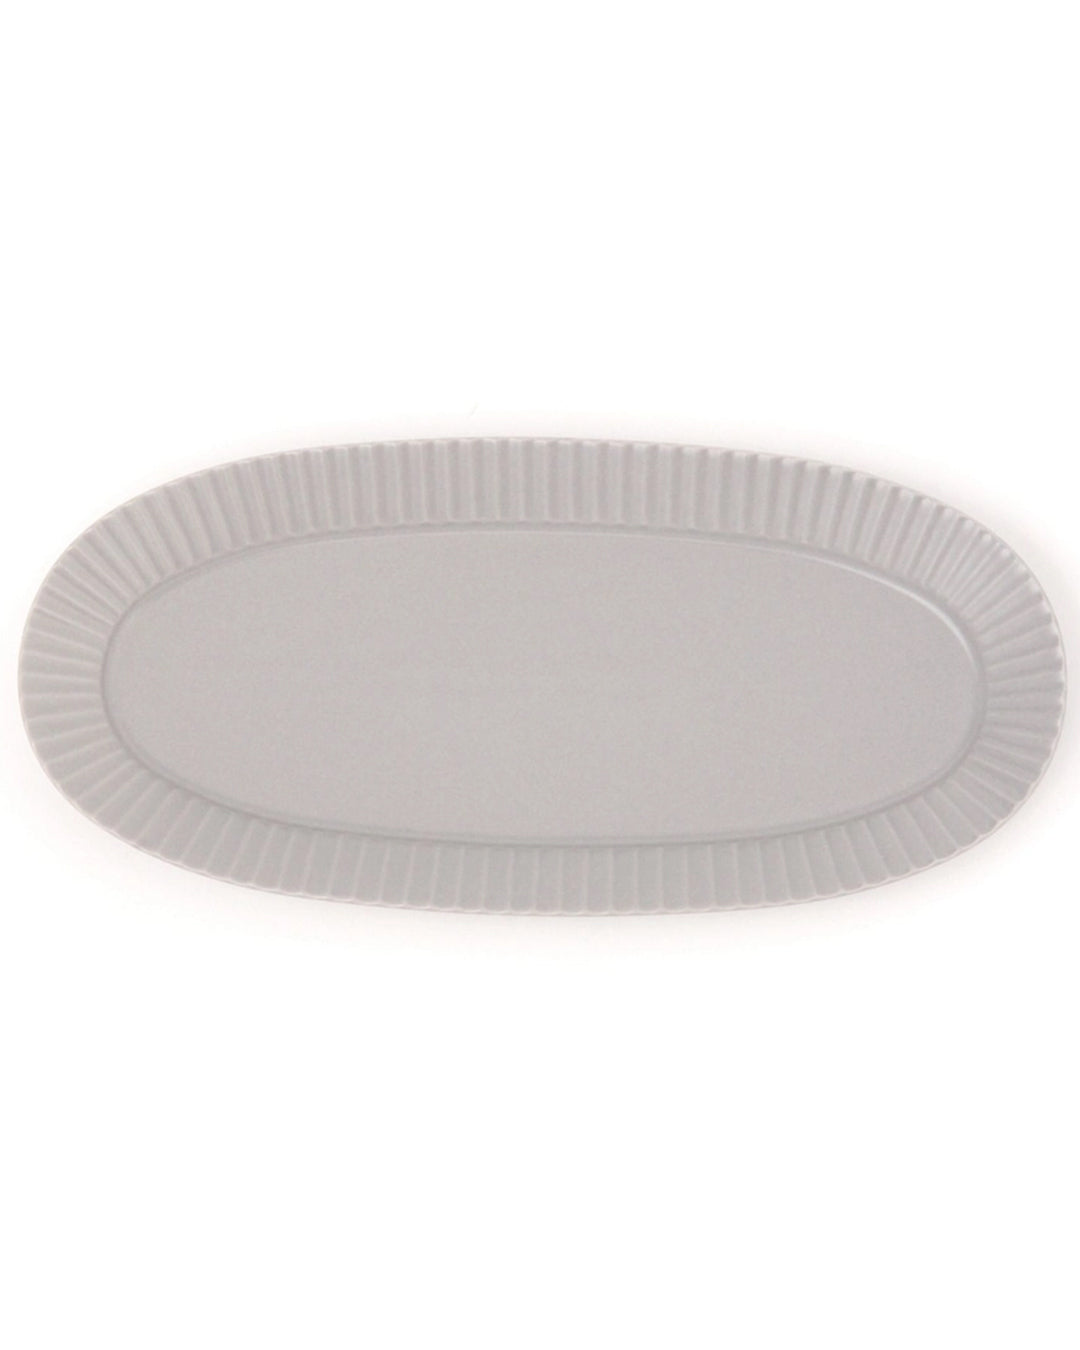 Lakole Mino Ware Large Oval Platter - Grey